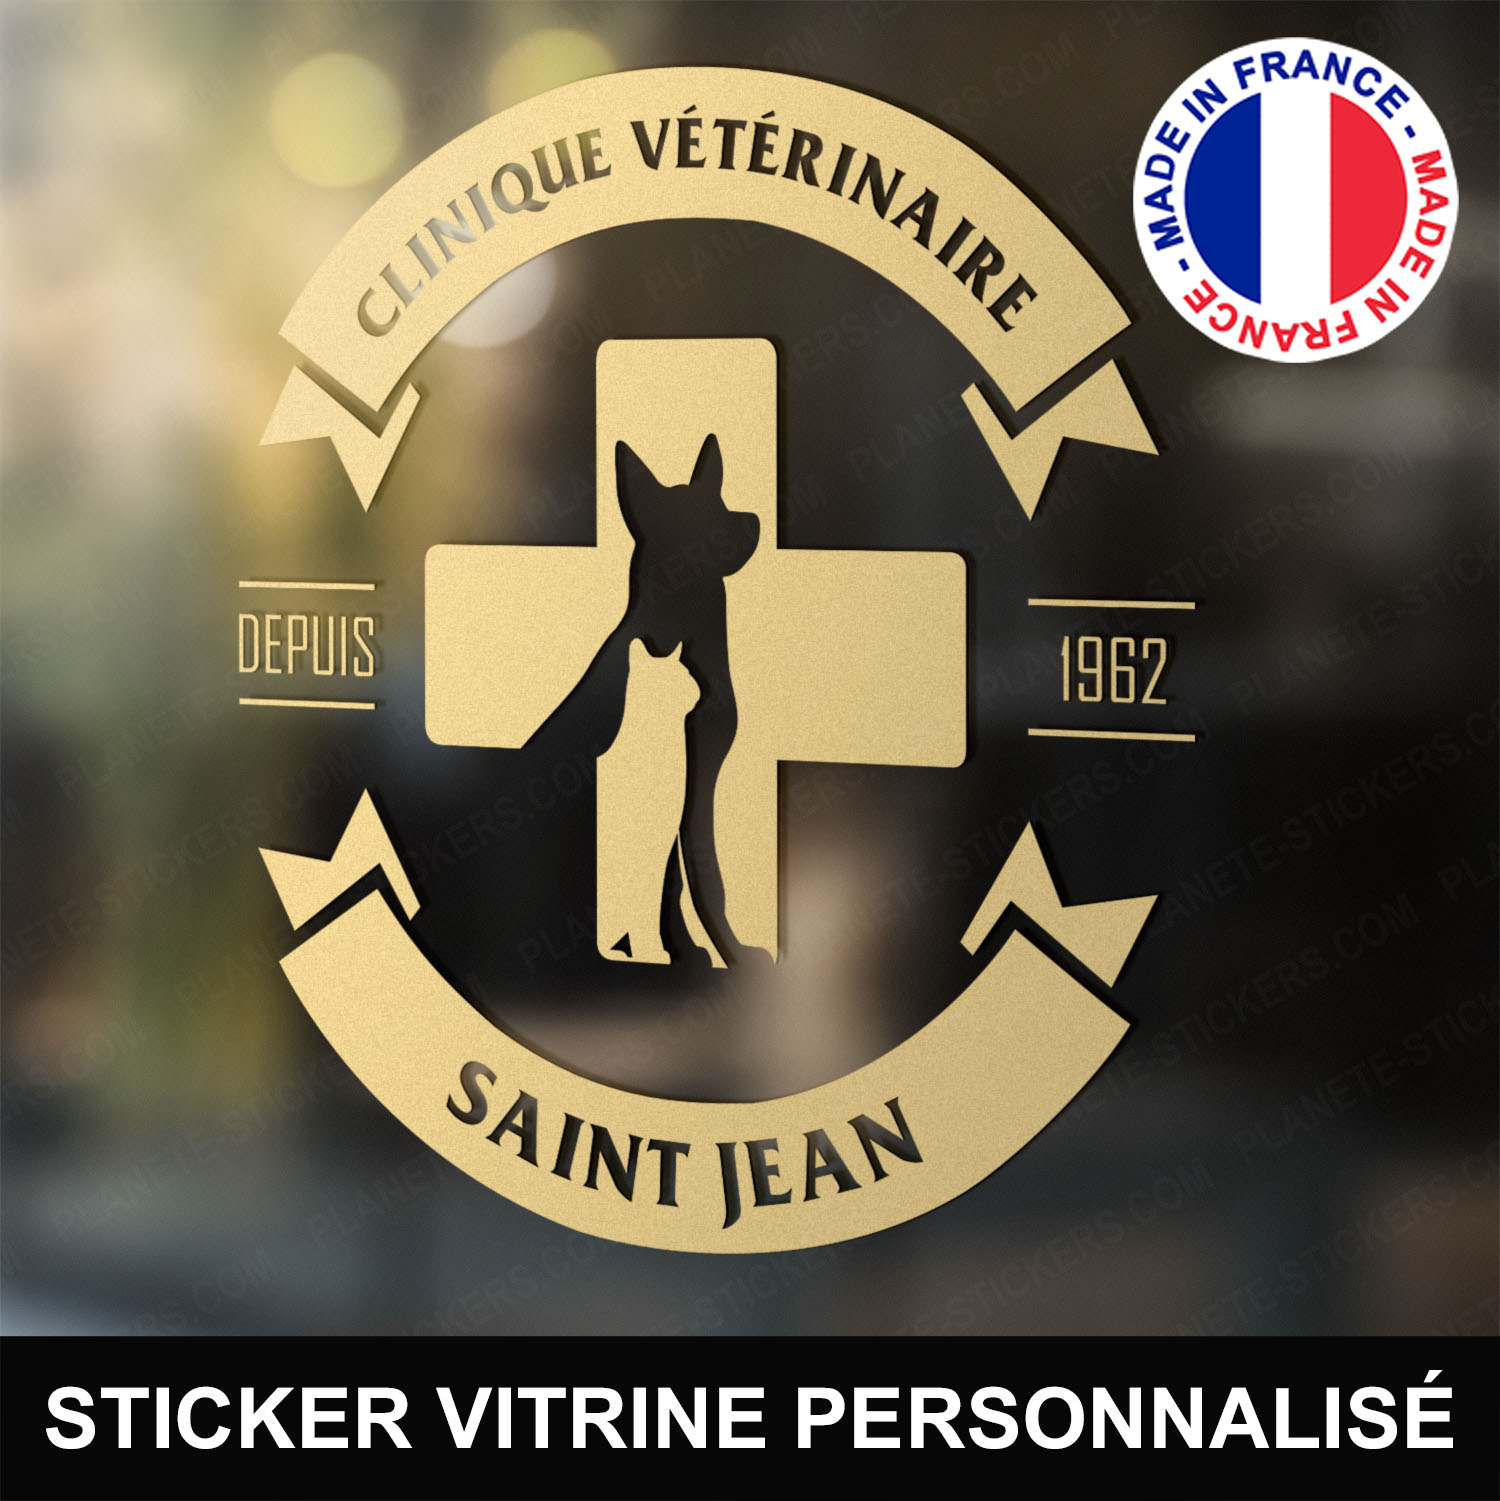 ref13veterinairevitrine-stickers-clinique-vétérinaire-vitrine-sticker-personnalisé-autocollant-pro-veterinaire-professionnel